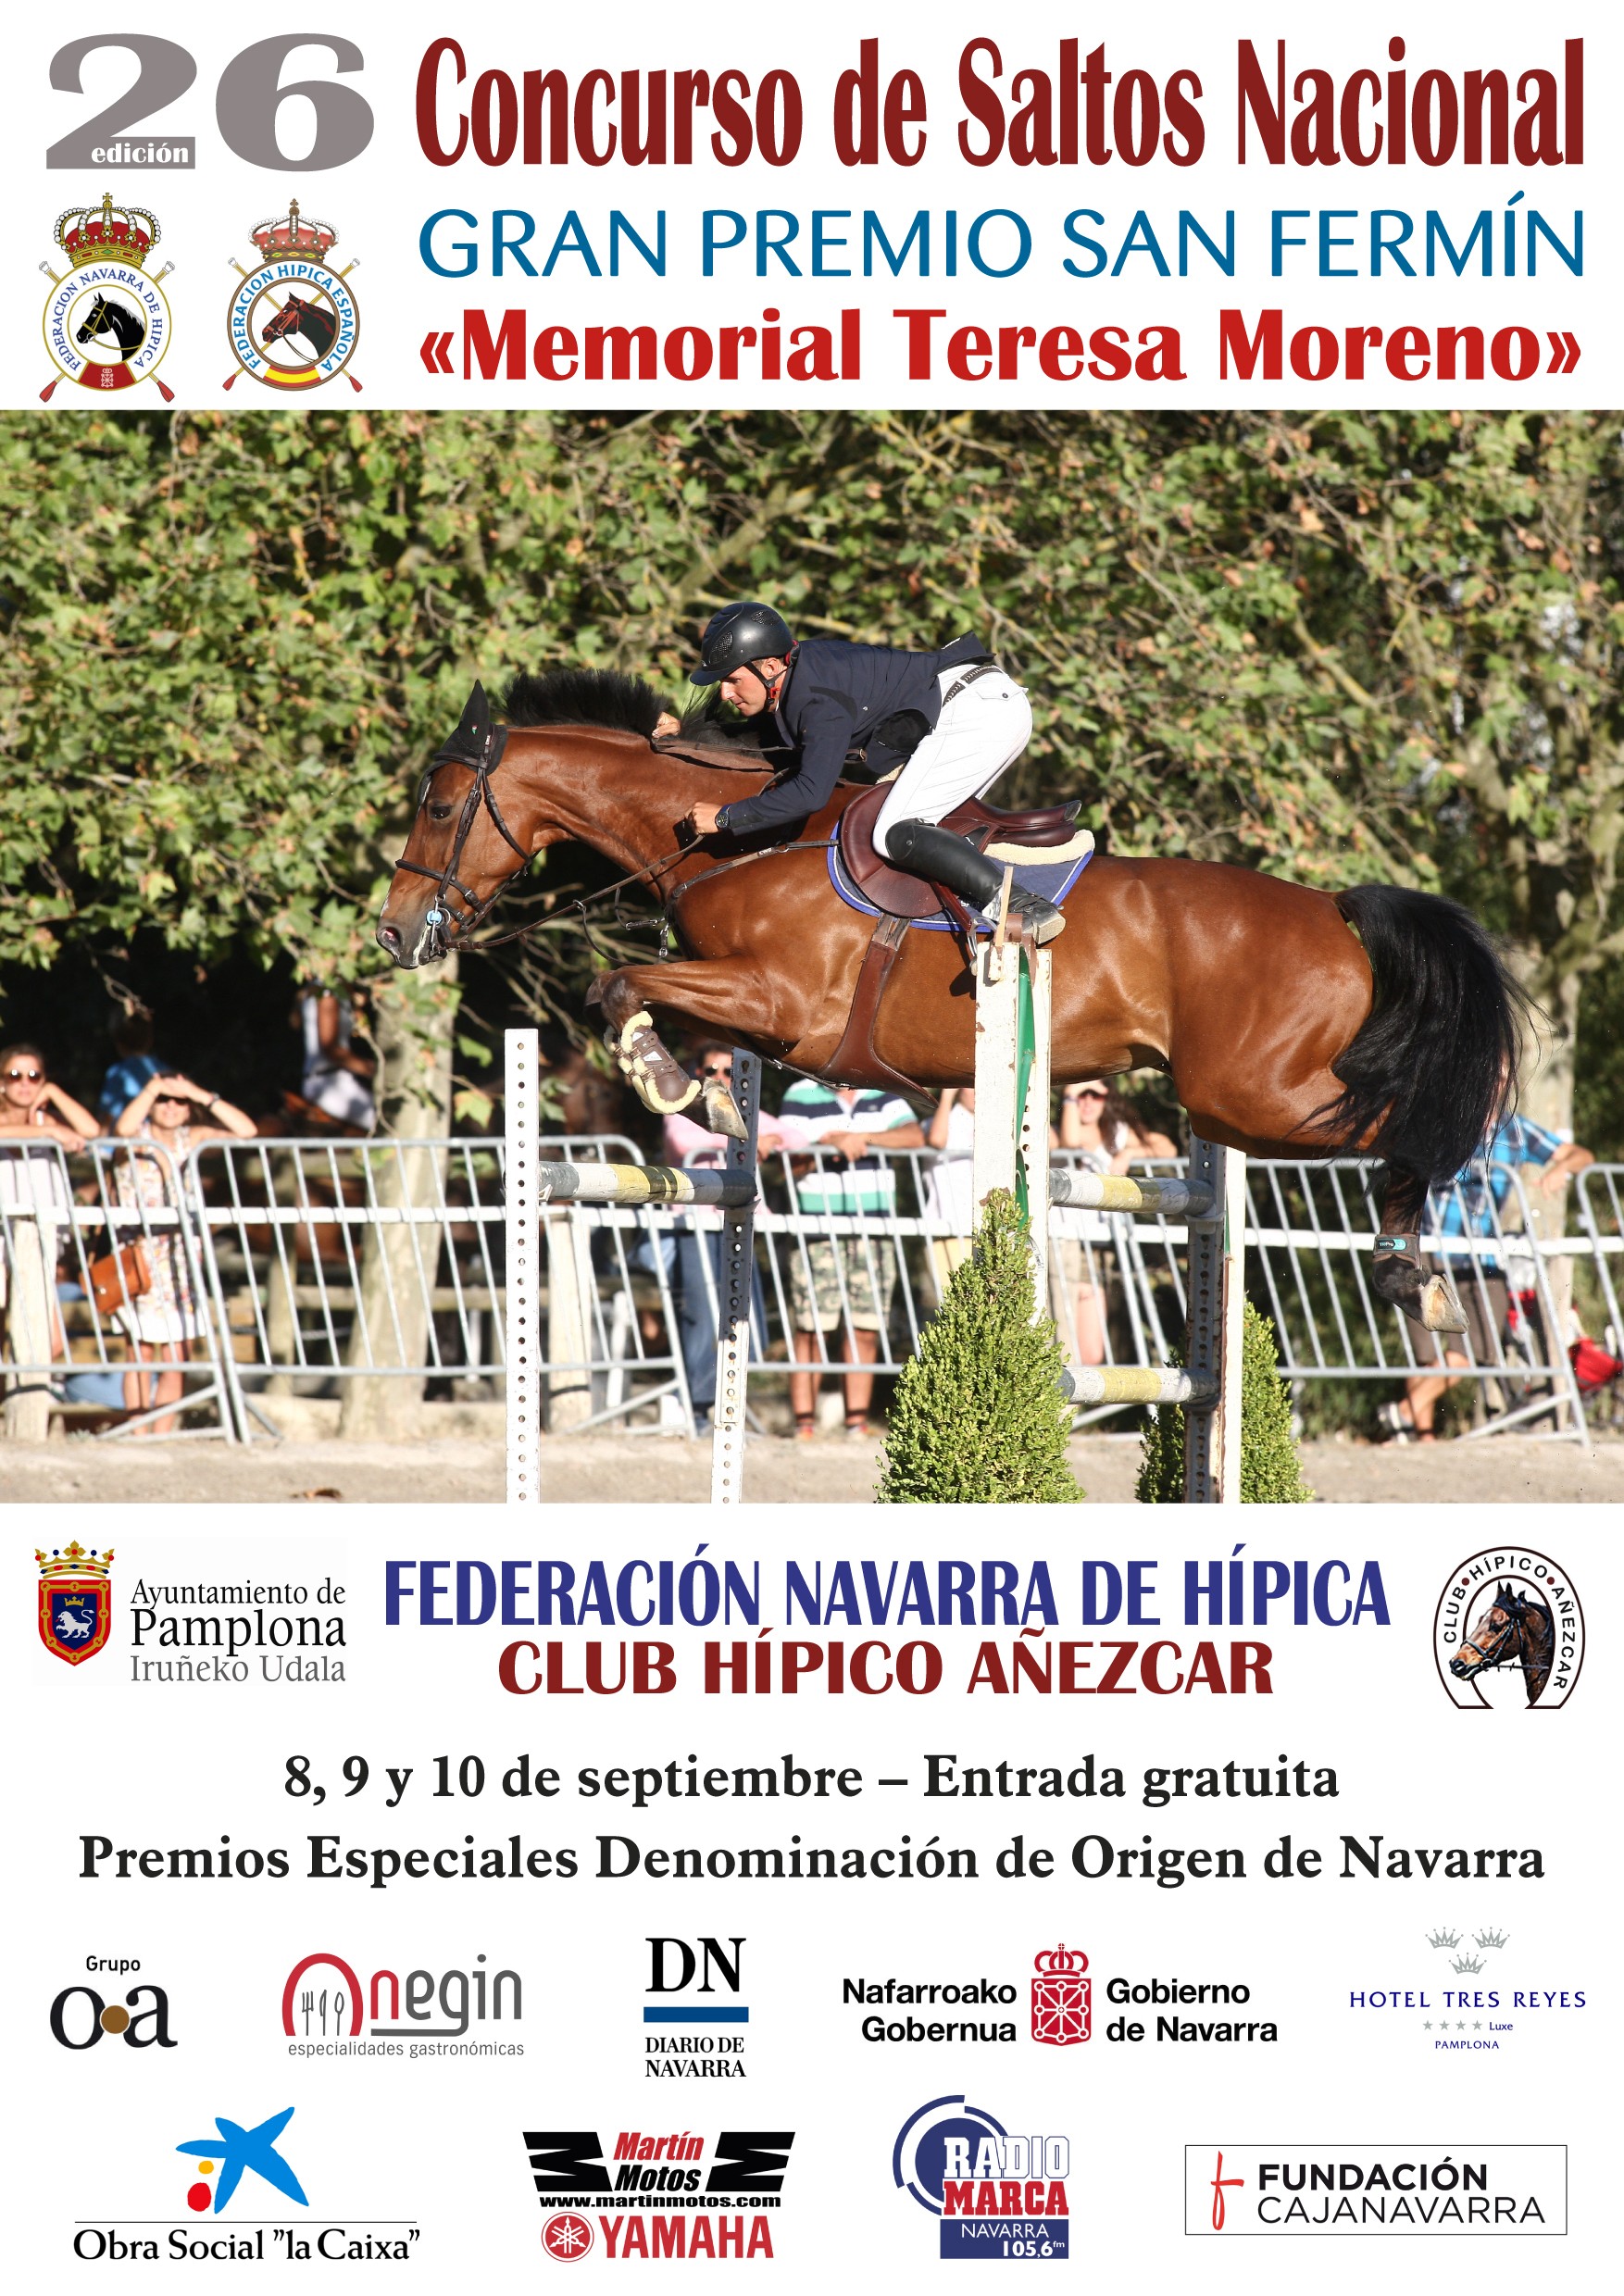 Noticias JUEVES XXVI. CSN** Gran Premio San Fermin Memorial Teresa Moreno